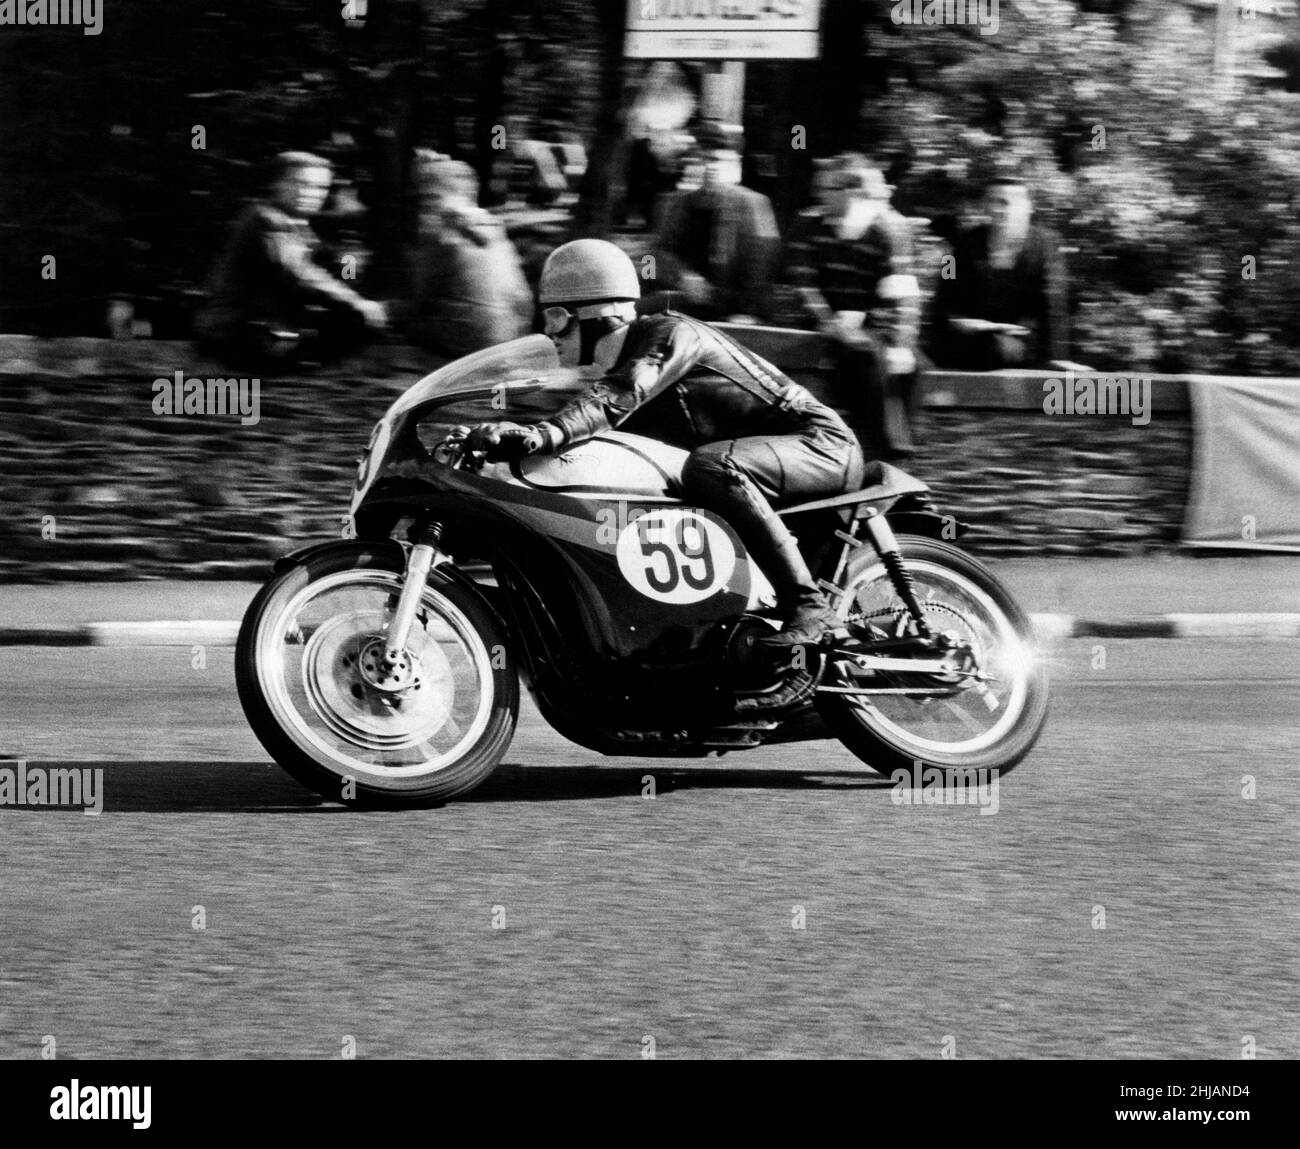 Griff Jenkins (no.59) vainqueur du Grand Prix Manx senior à la vitesse.Septembre 1963 P012516 Banque D'Images